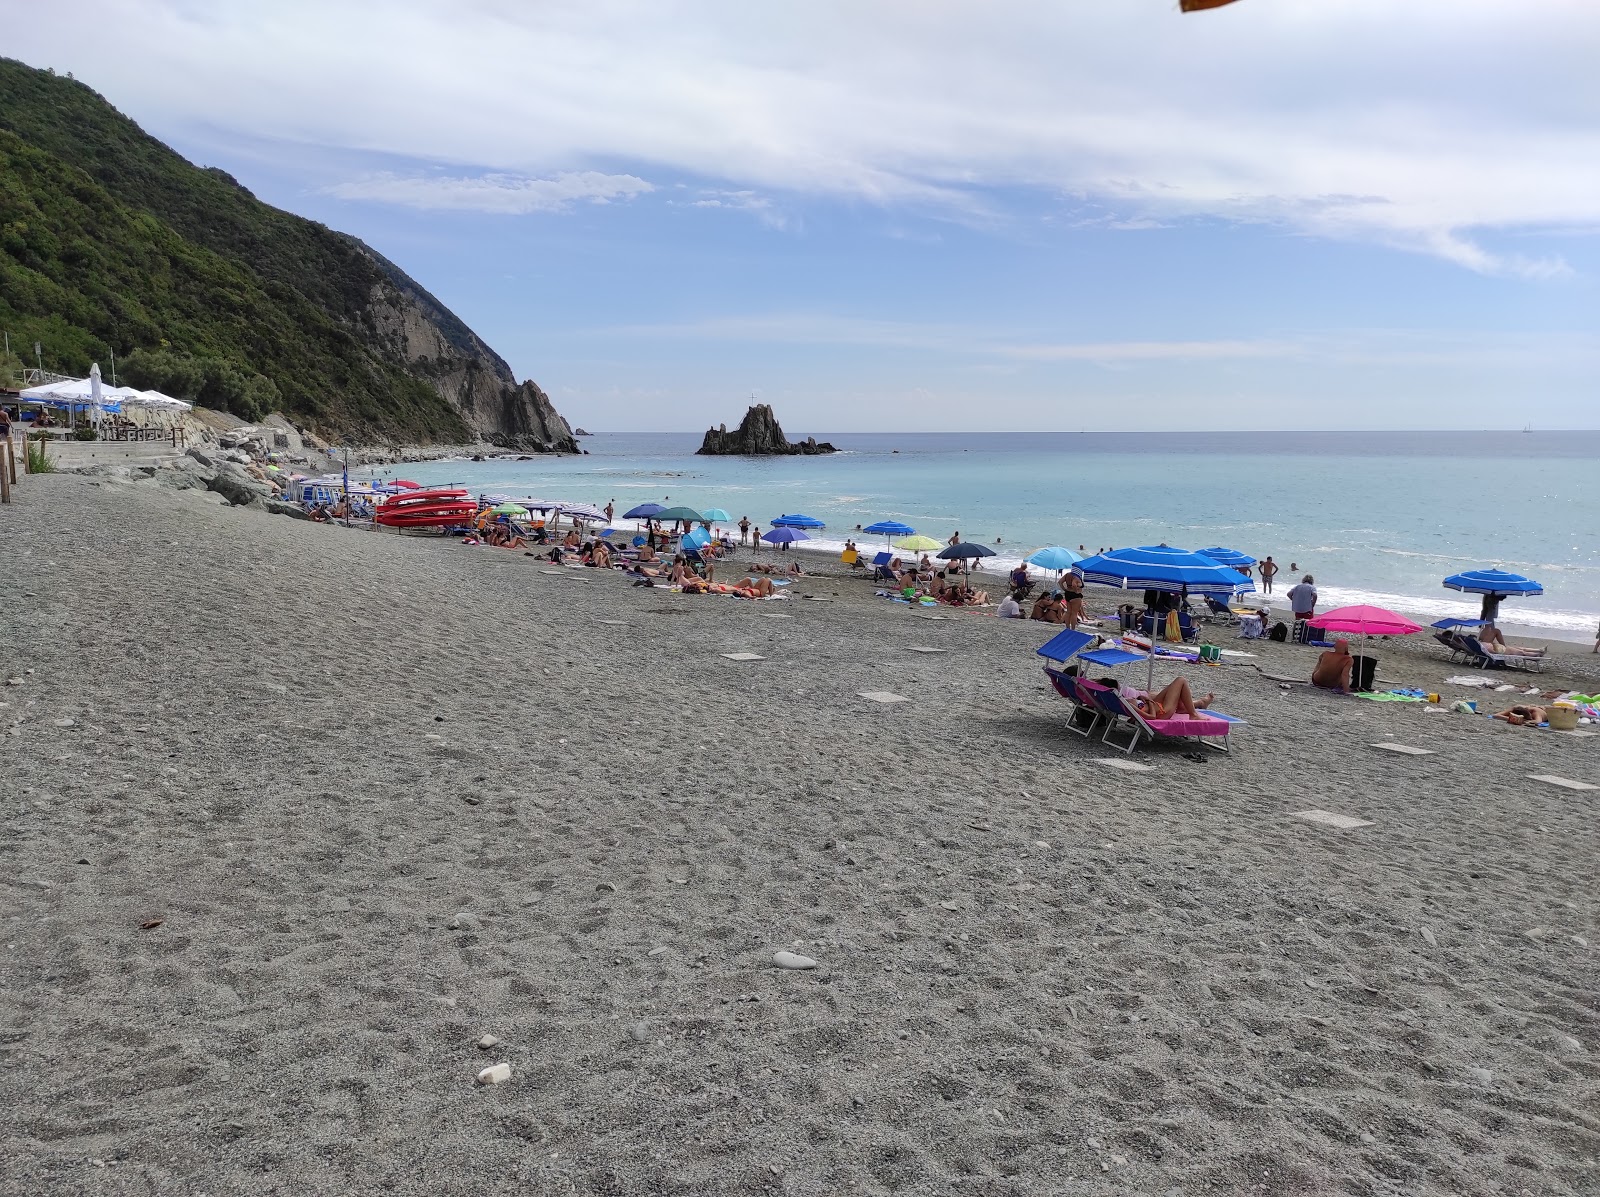 Foto von Spiaggia Riva Trigoso mit gerader strand